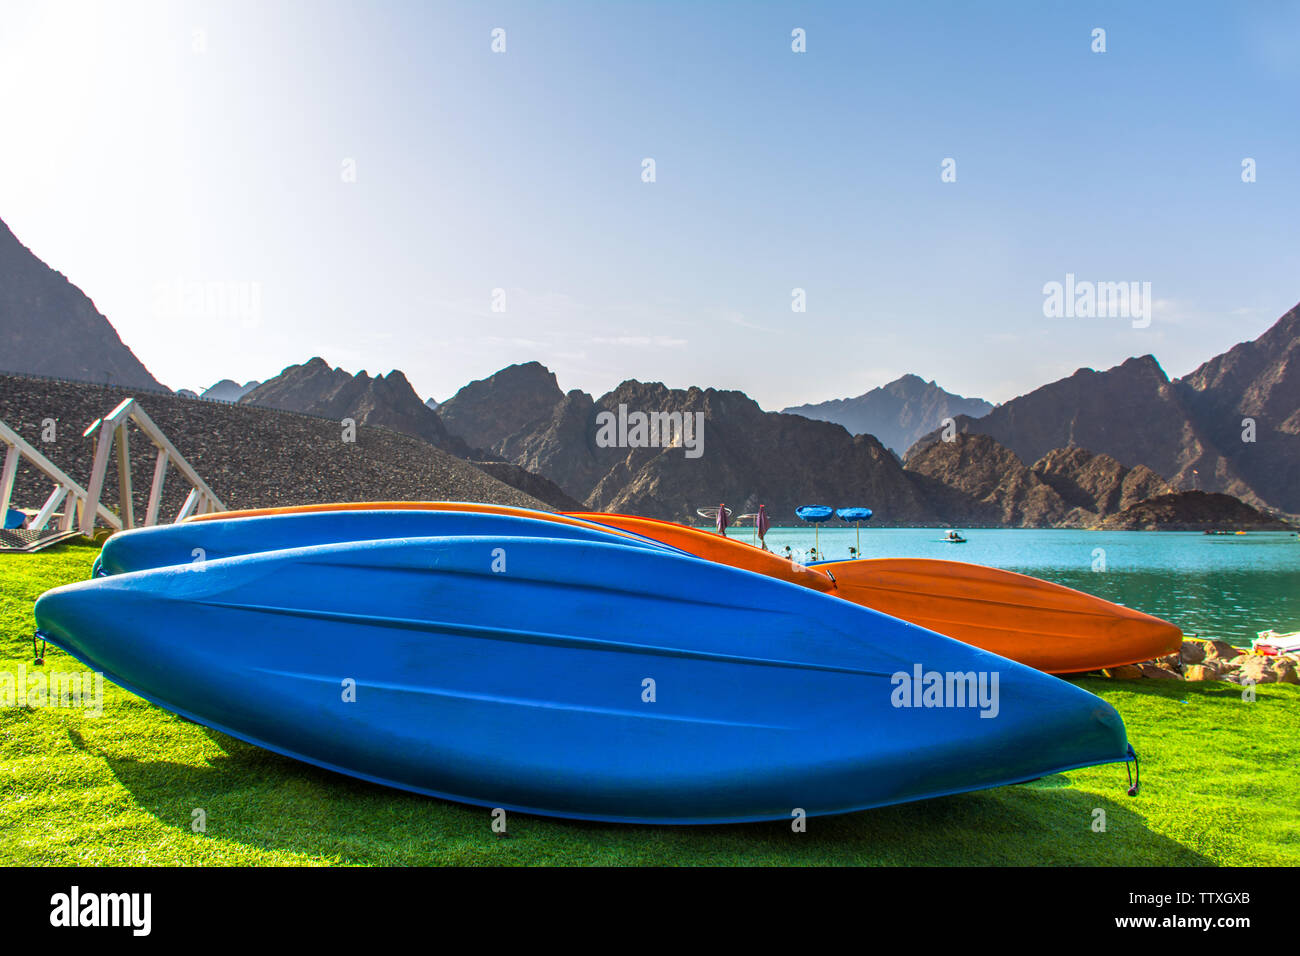 Meilleur endroit pour pratiquer des activités d'aventure comme le kayak nautisme Hatta étonnante de paysages de montagne de barrage Banque D'Images